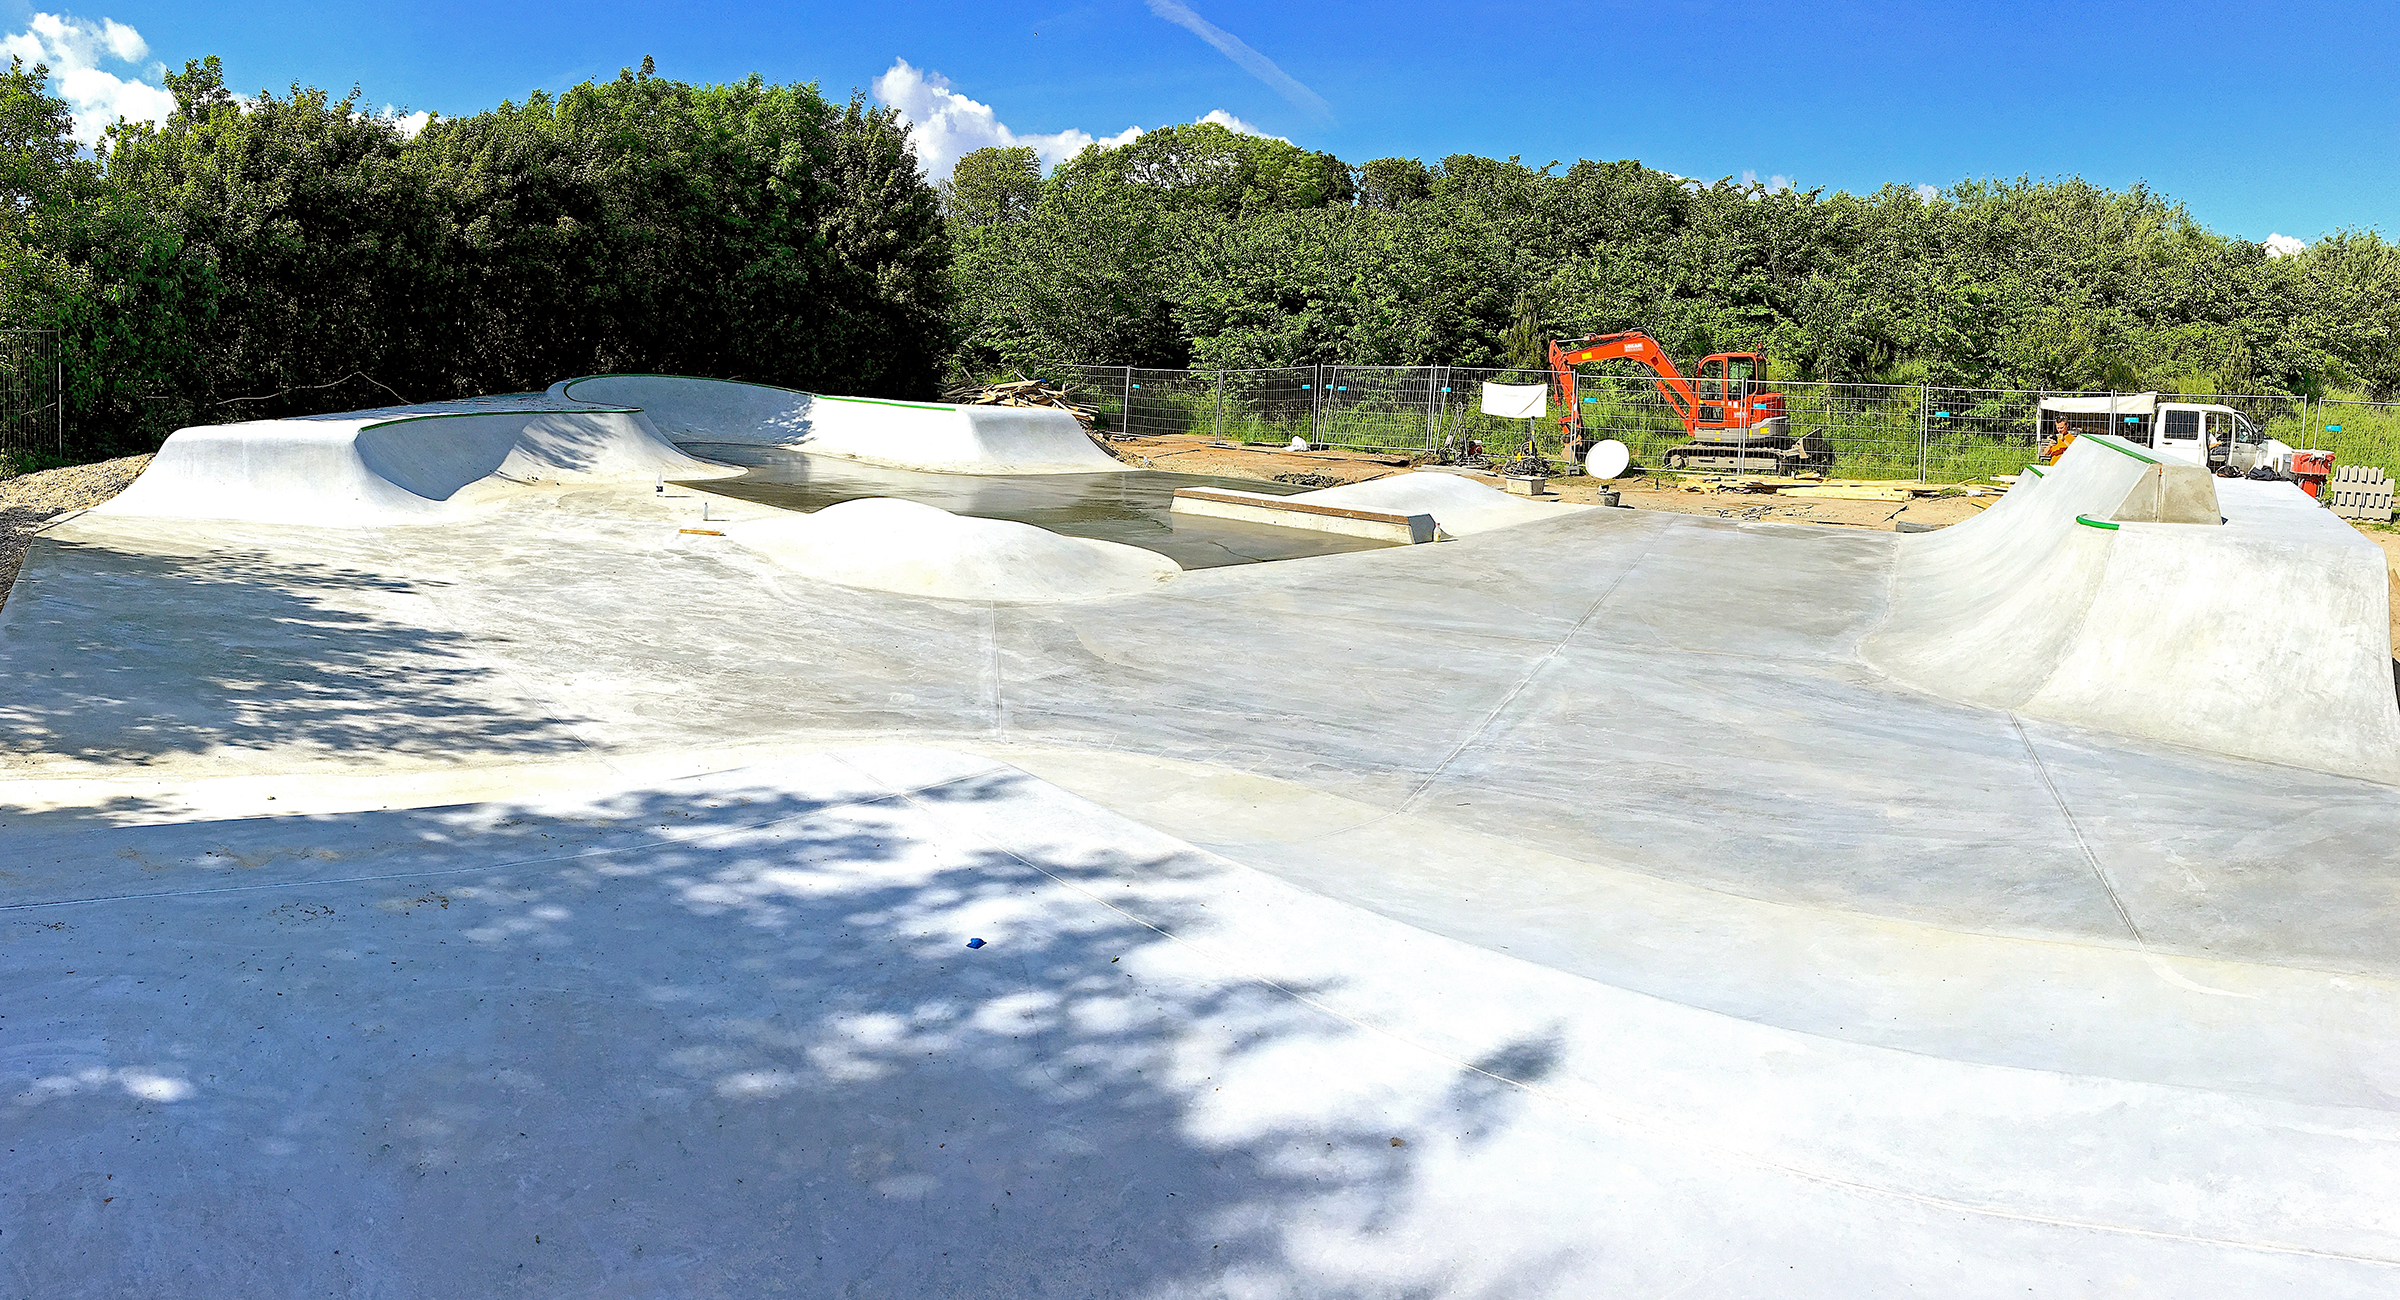 Billedet viser en skatepark i beton med et enkelt vådt, nystøbt område tilbage